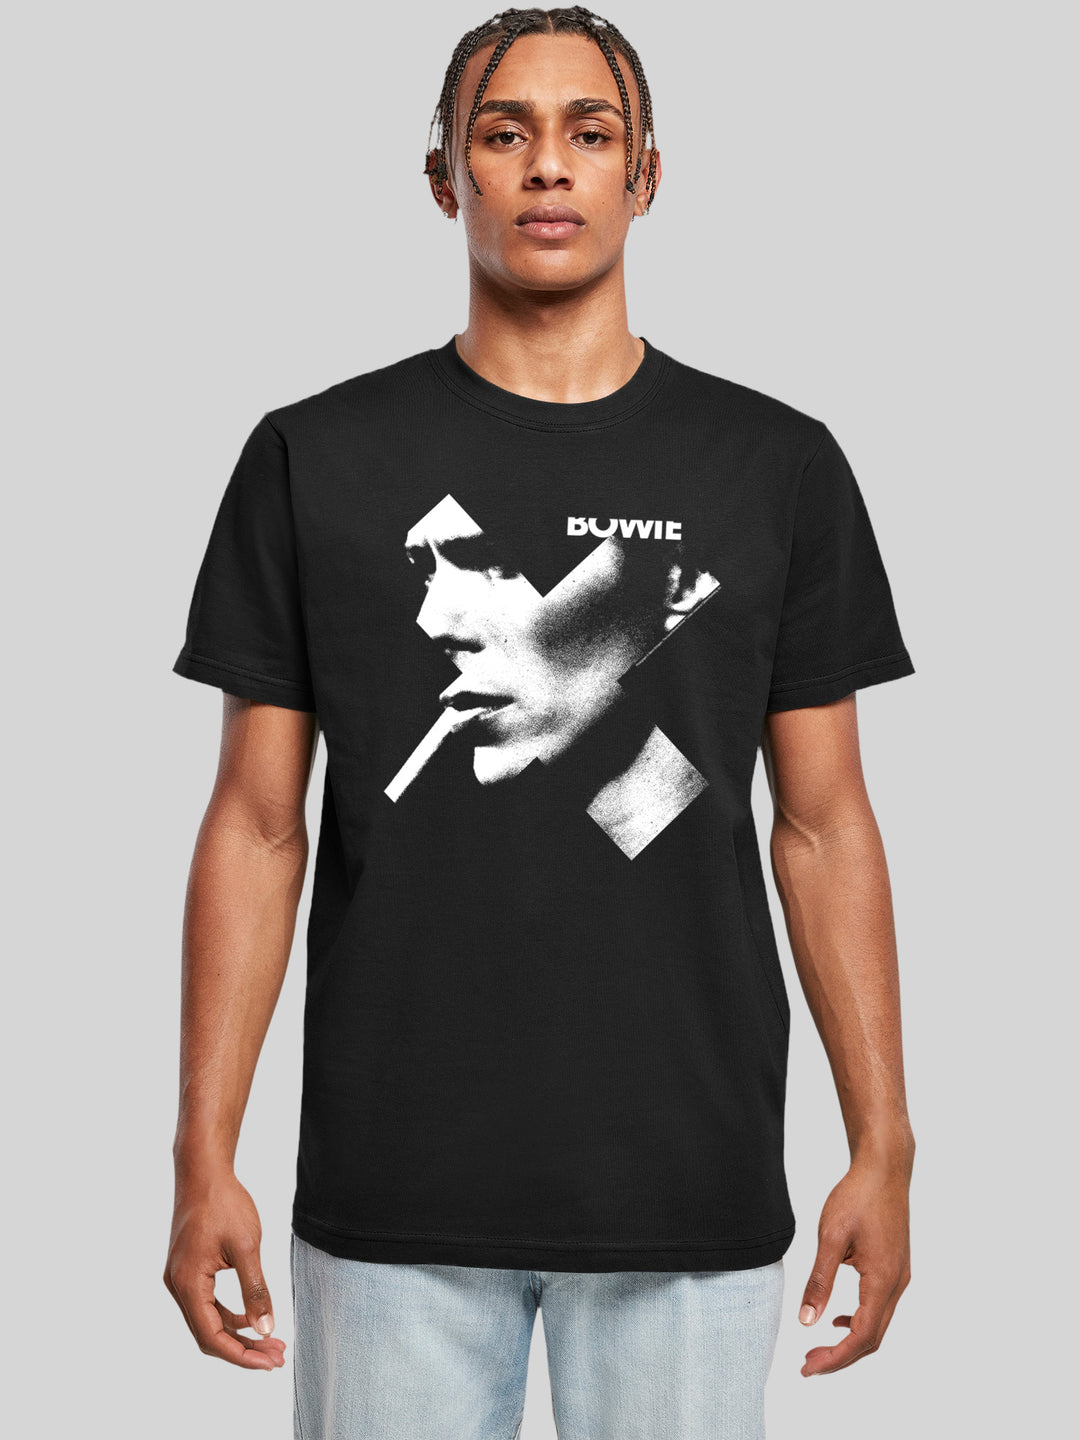 David Bowie T-Shirt | Cross Smoke | Premium Men T Shirt